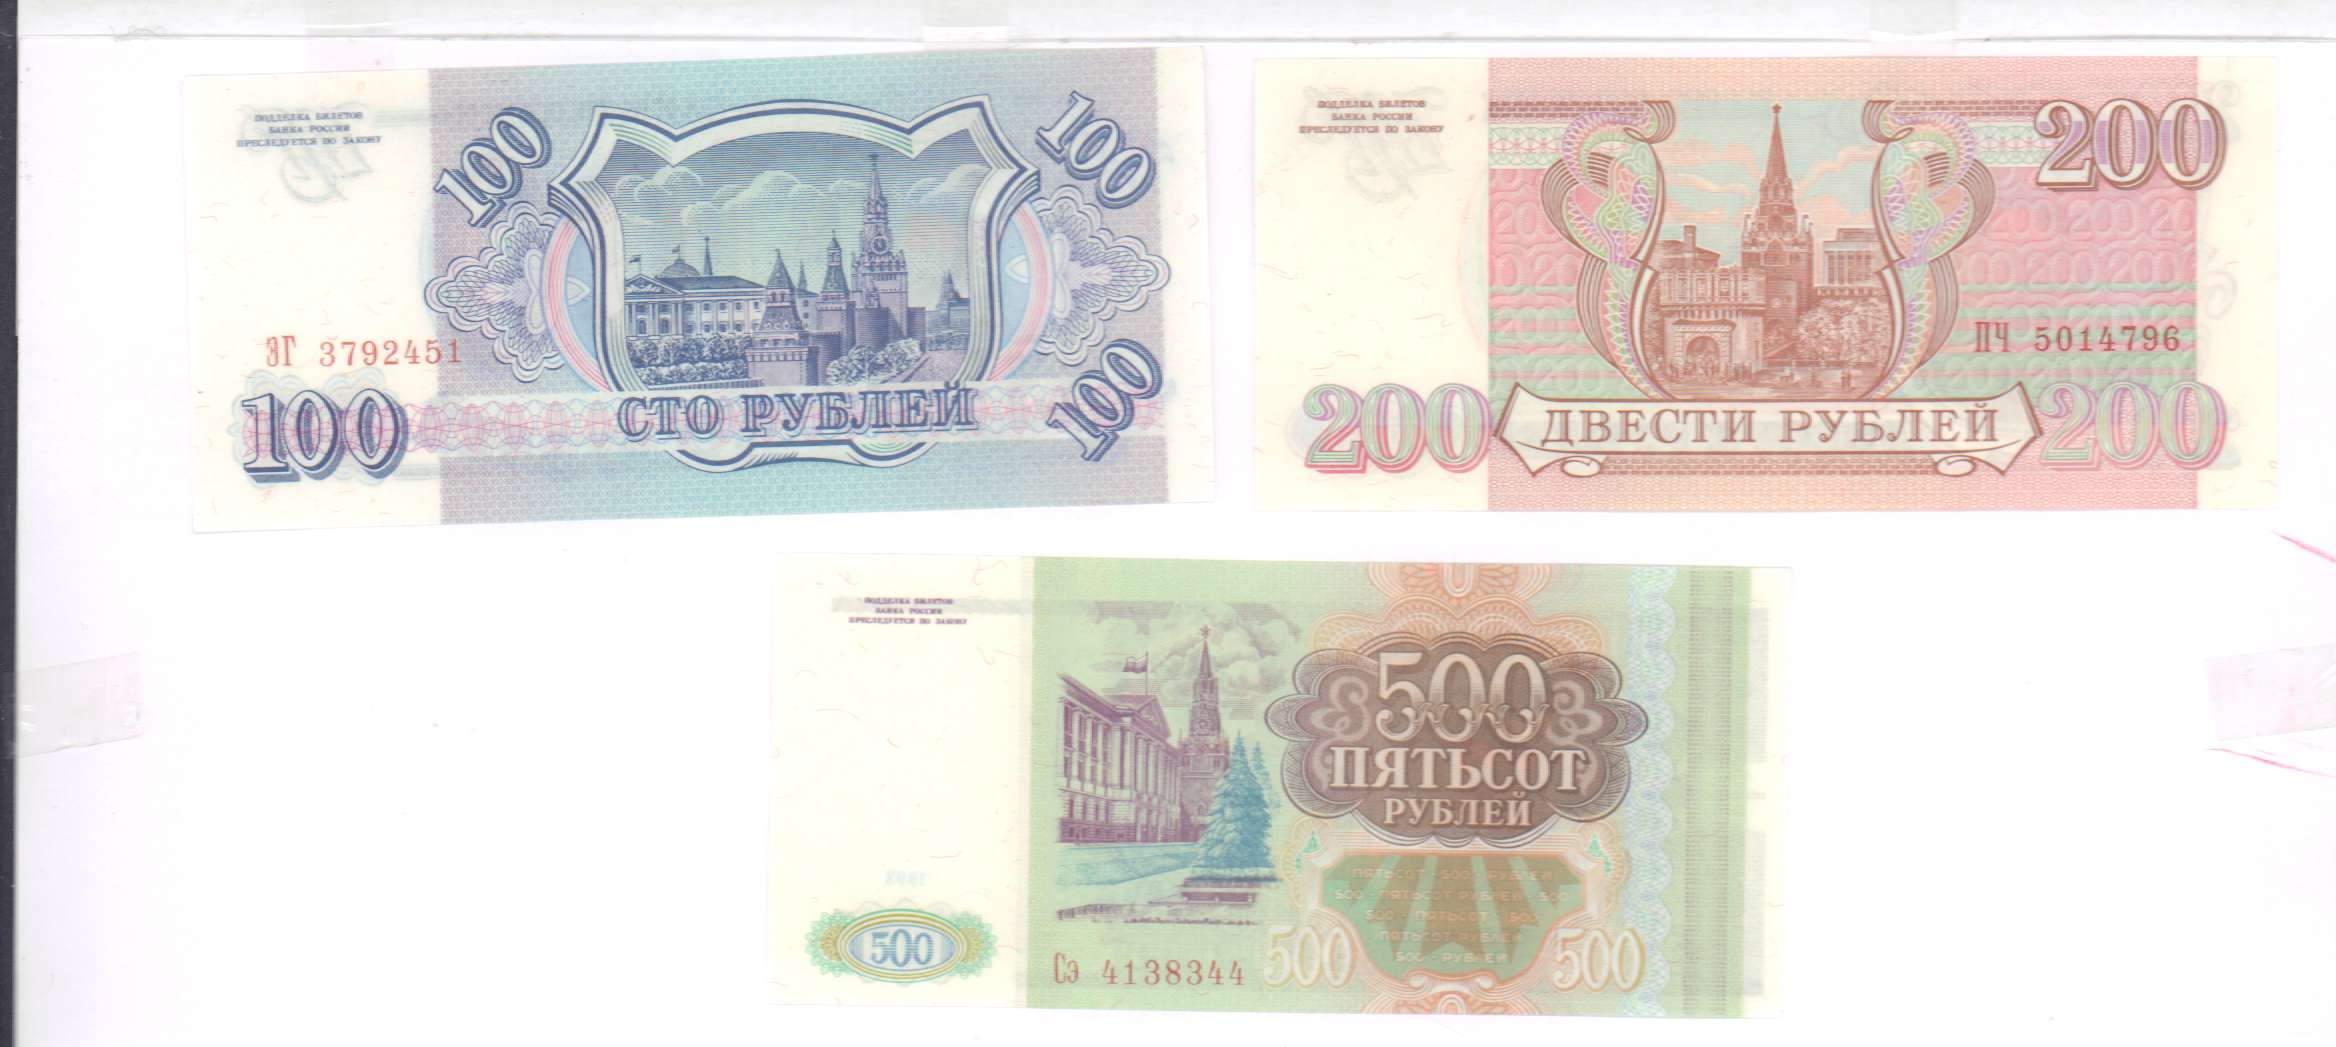 80 в рублях на сегодня в россии. 100 Рублей 1993 Аверс-Аверс. 100 Рублей 3 штуки. 500 Рублей 3 штуки. Как выглядят билеты банка России с кюаркодом.